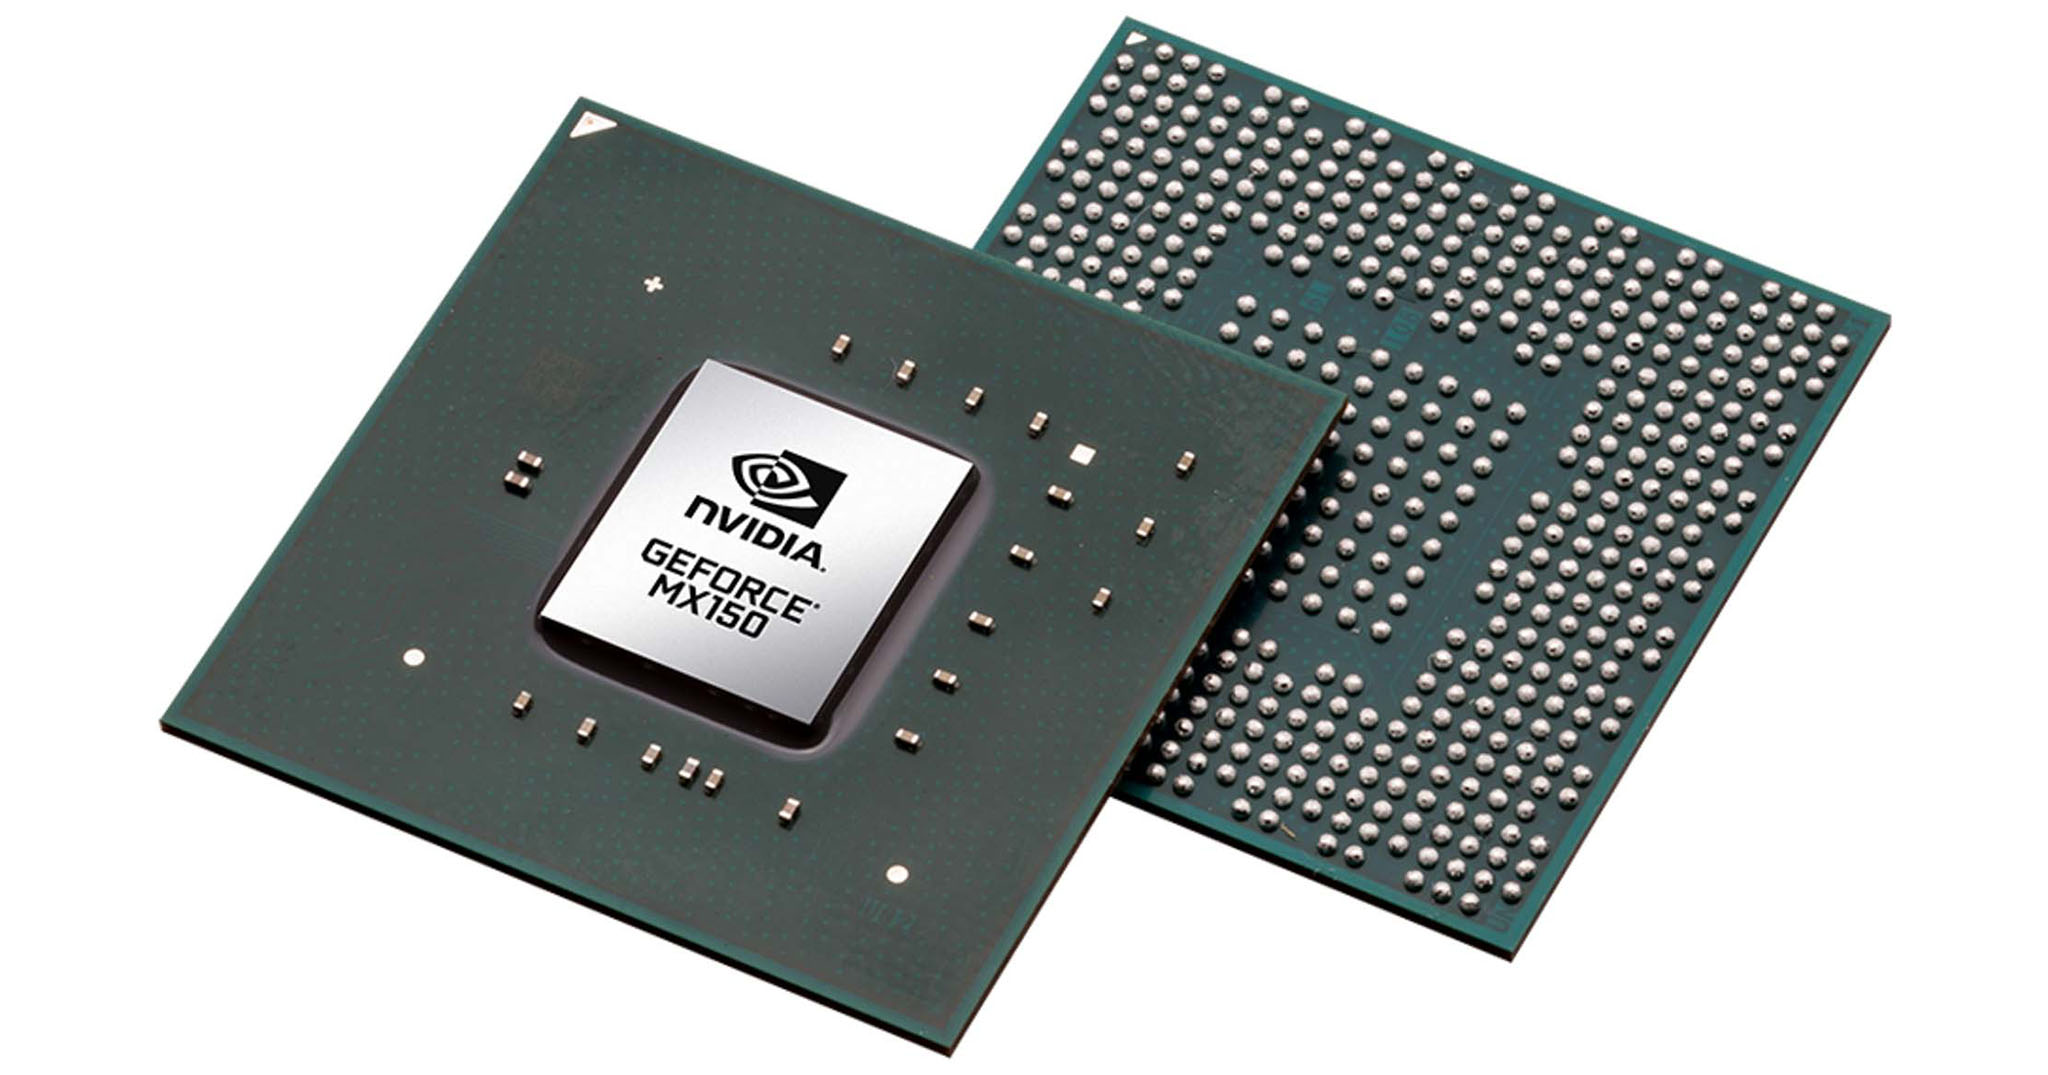 Nvidia "âm thầm" ra mắt MX150M - xung và TDP thấp hơn MX150 cho laptop mỏng nhẹ?